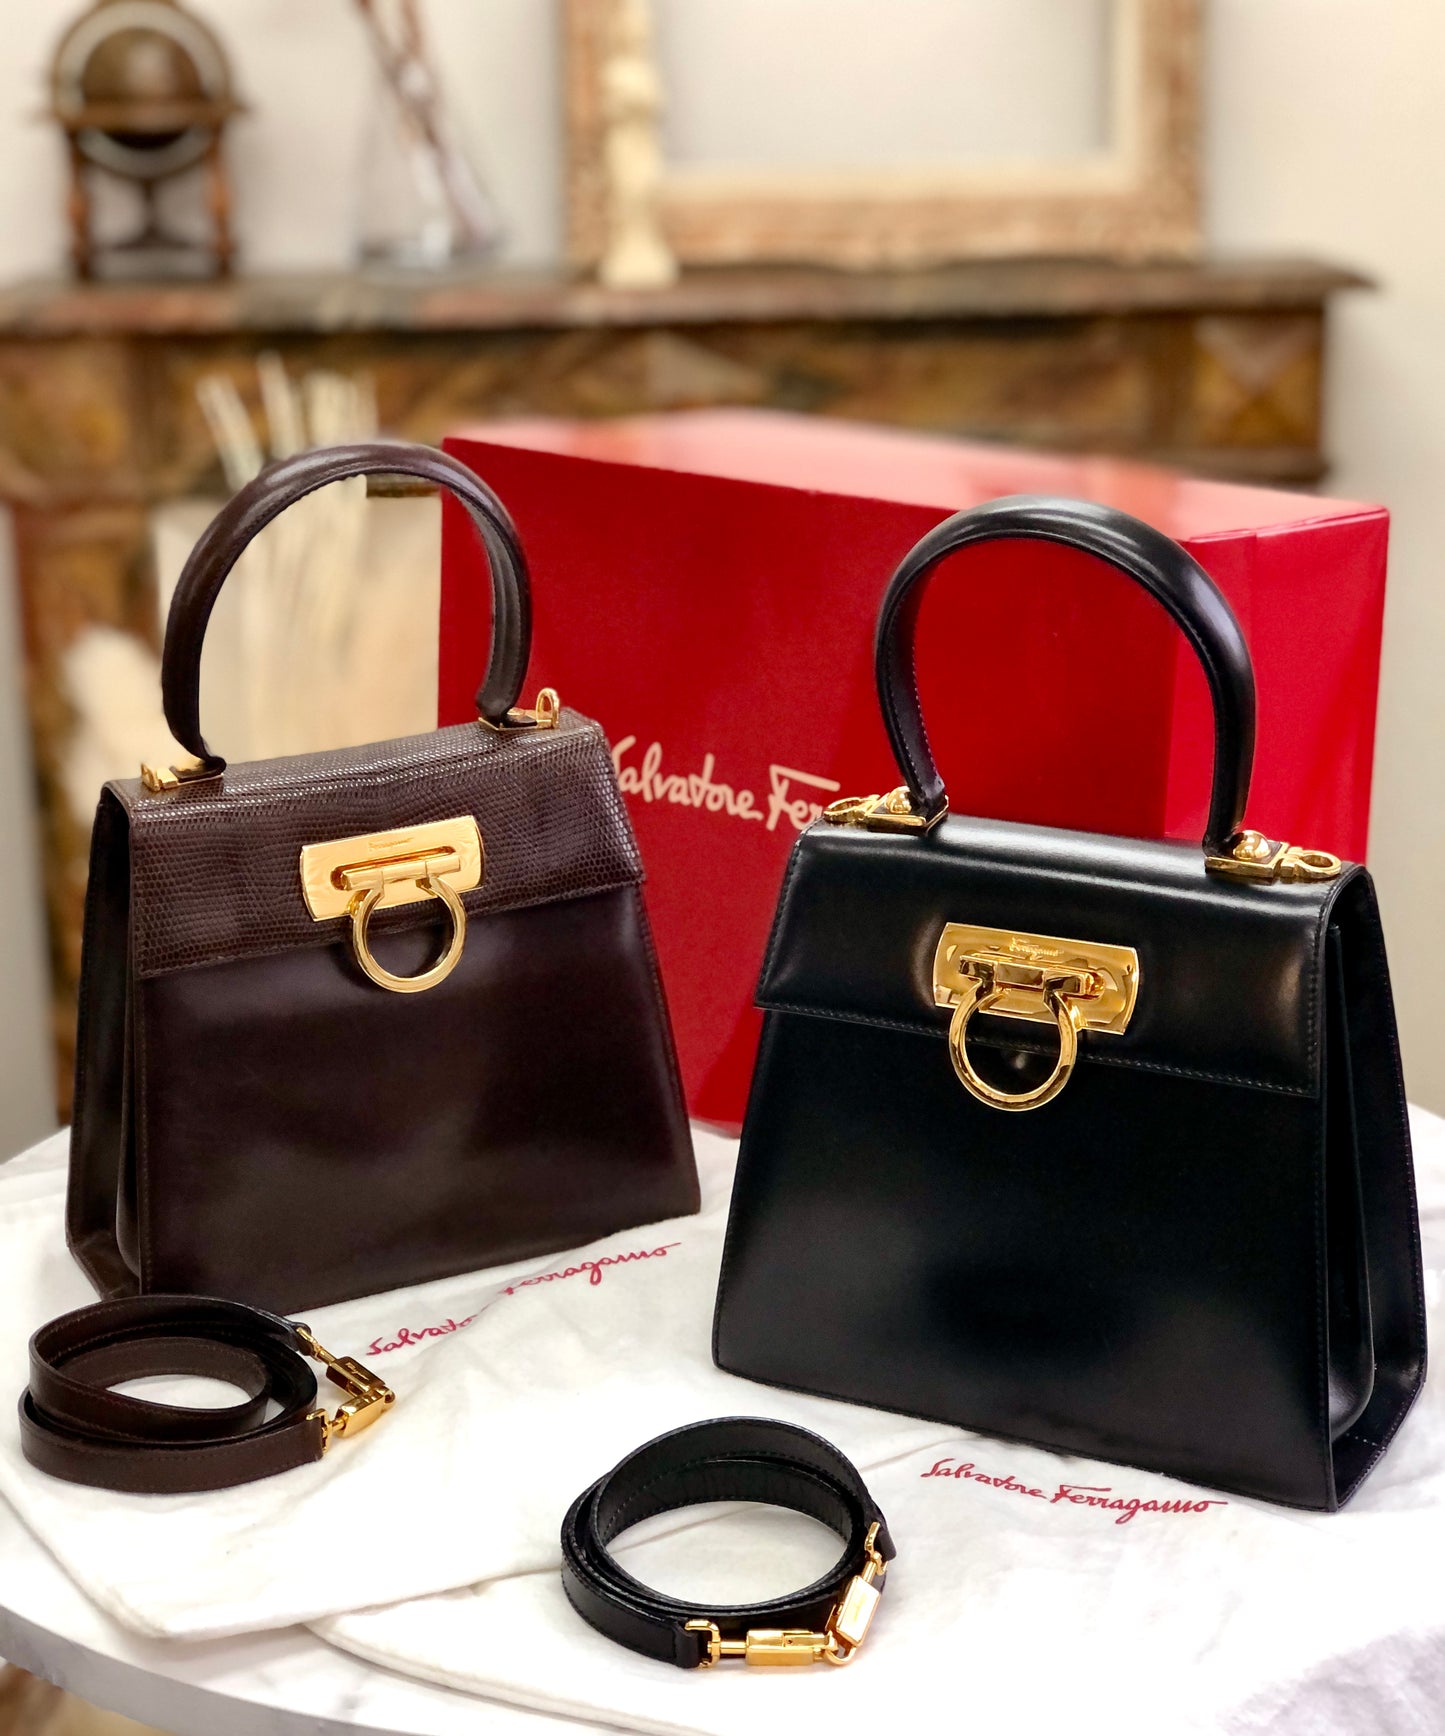 Salvatore Ferragamo Gancini 2Way Top handle Handbag Shoulder bag Black Vintage Old 5bnsnc